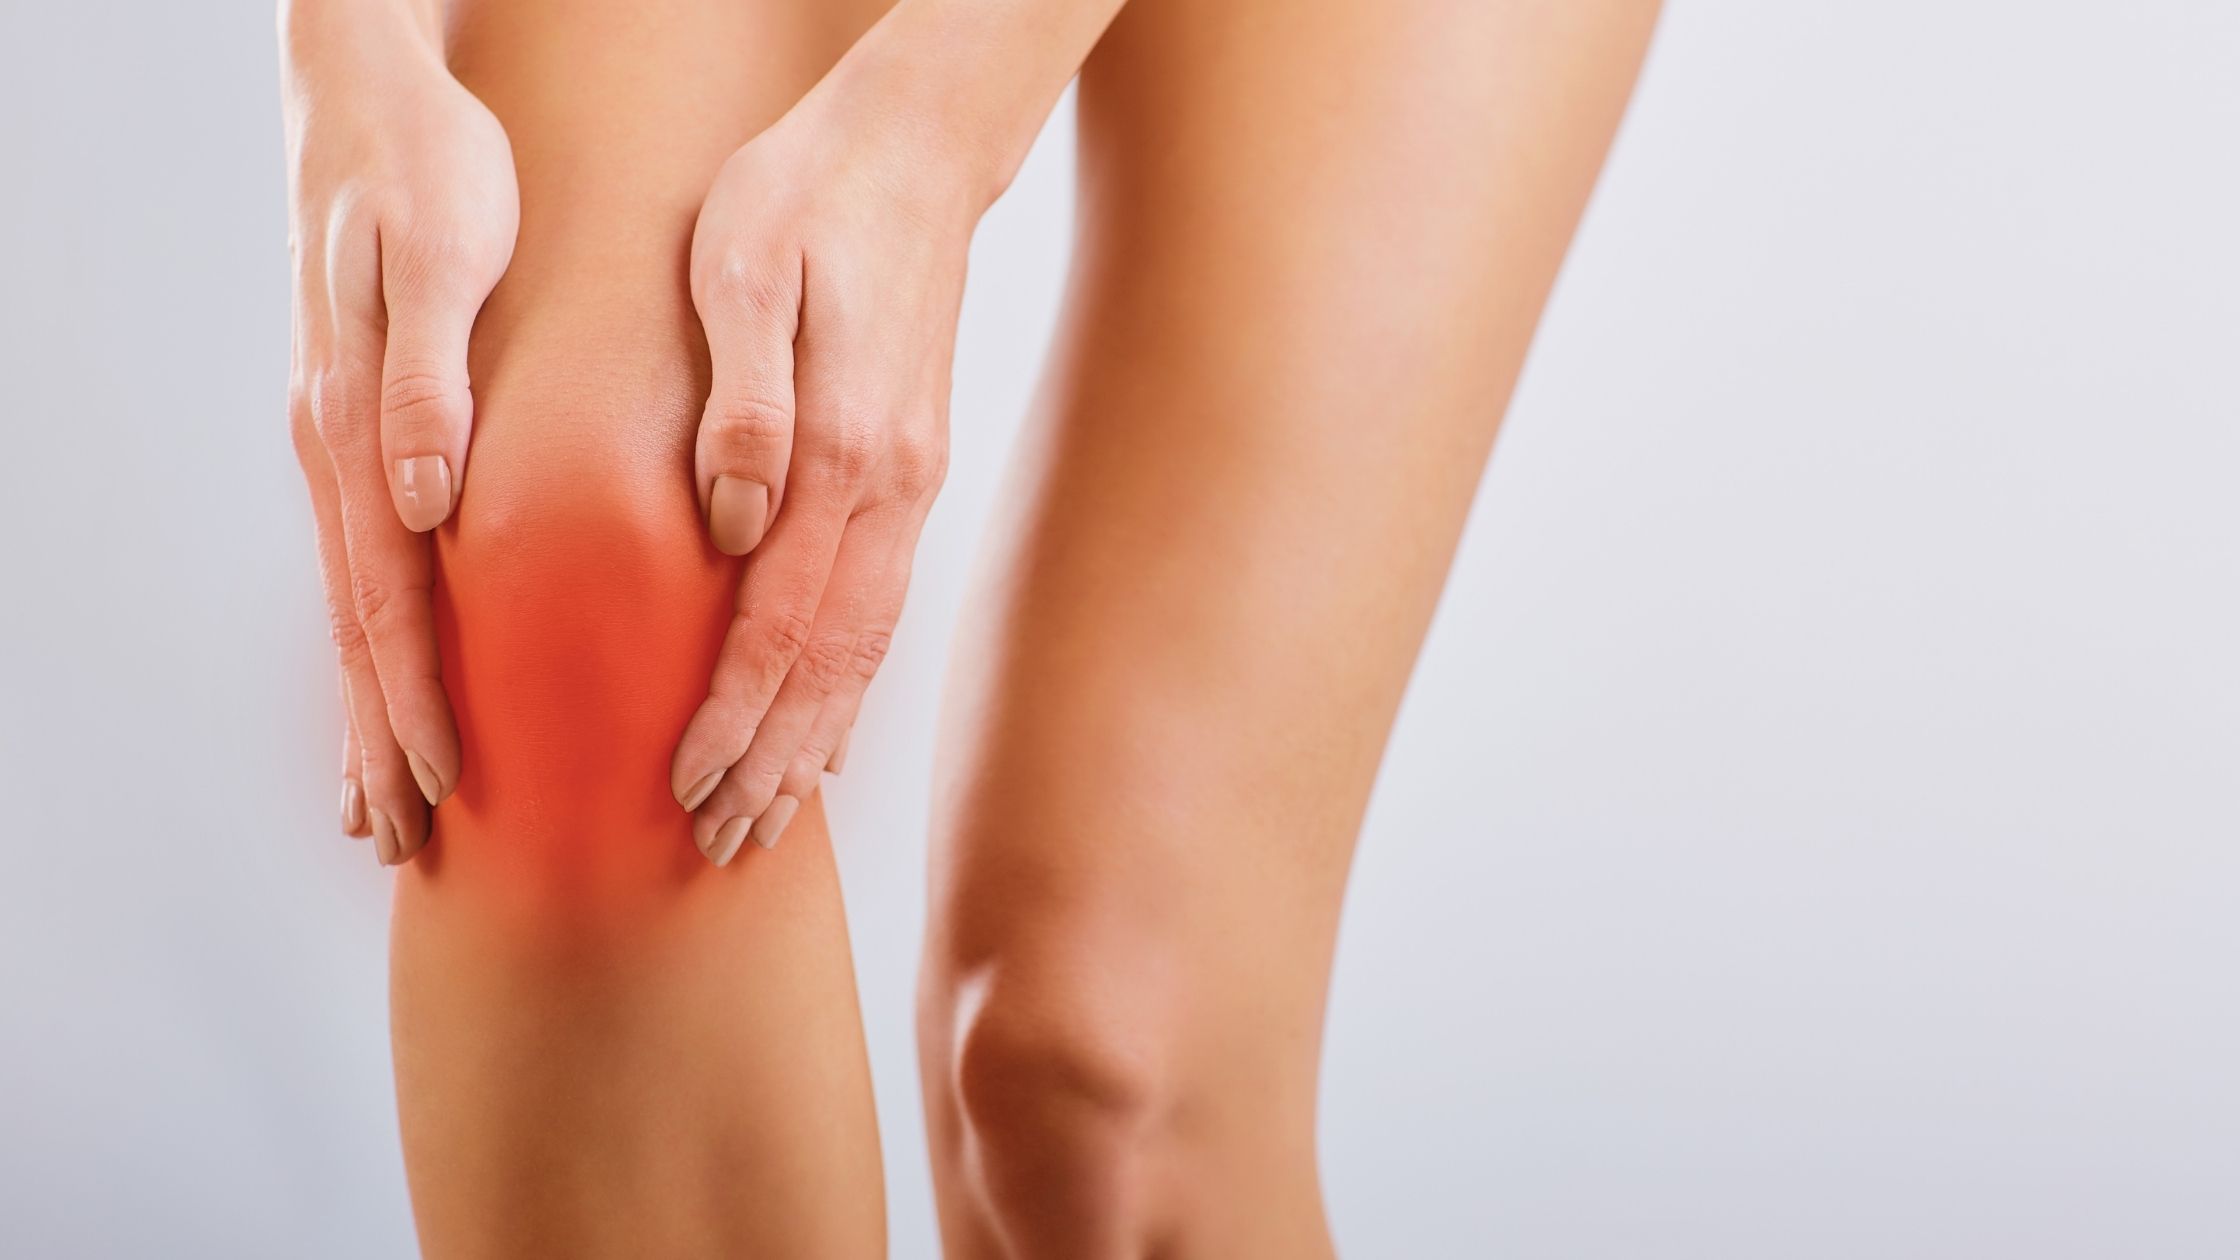 5 Easy Bursitis Knee Treatment Exercises to Ease Knee Pain